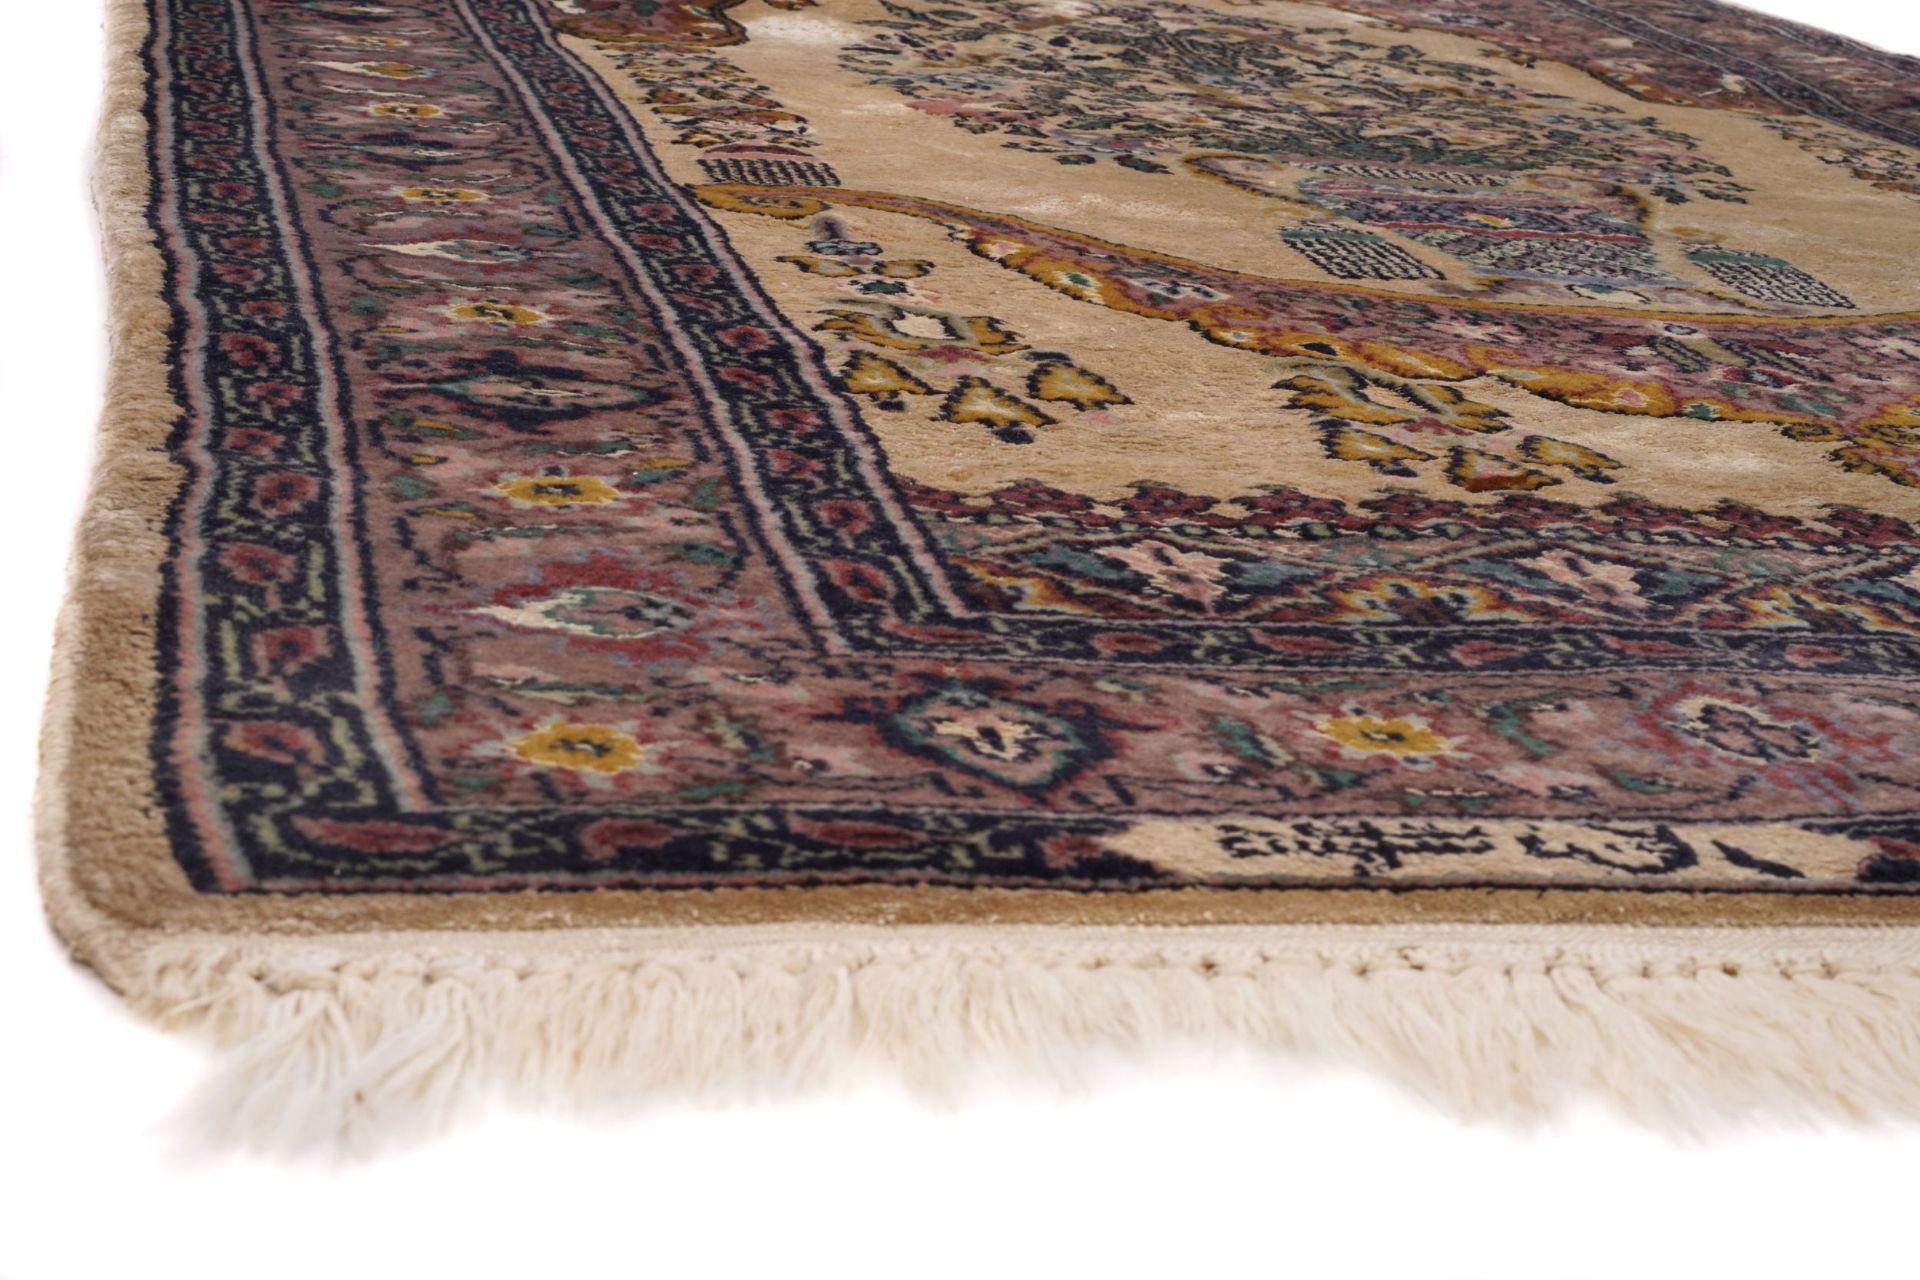 Teppich mit Vasenmotiv. In der Art von Hereke, wohl Türkei. Wohl 20. Jh. - Image 3 of 5